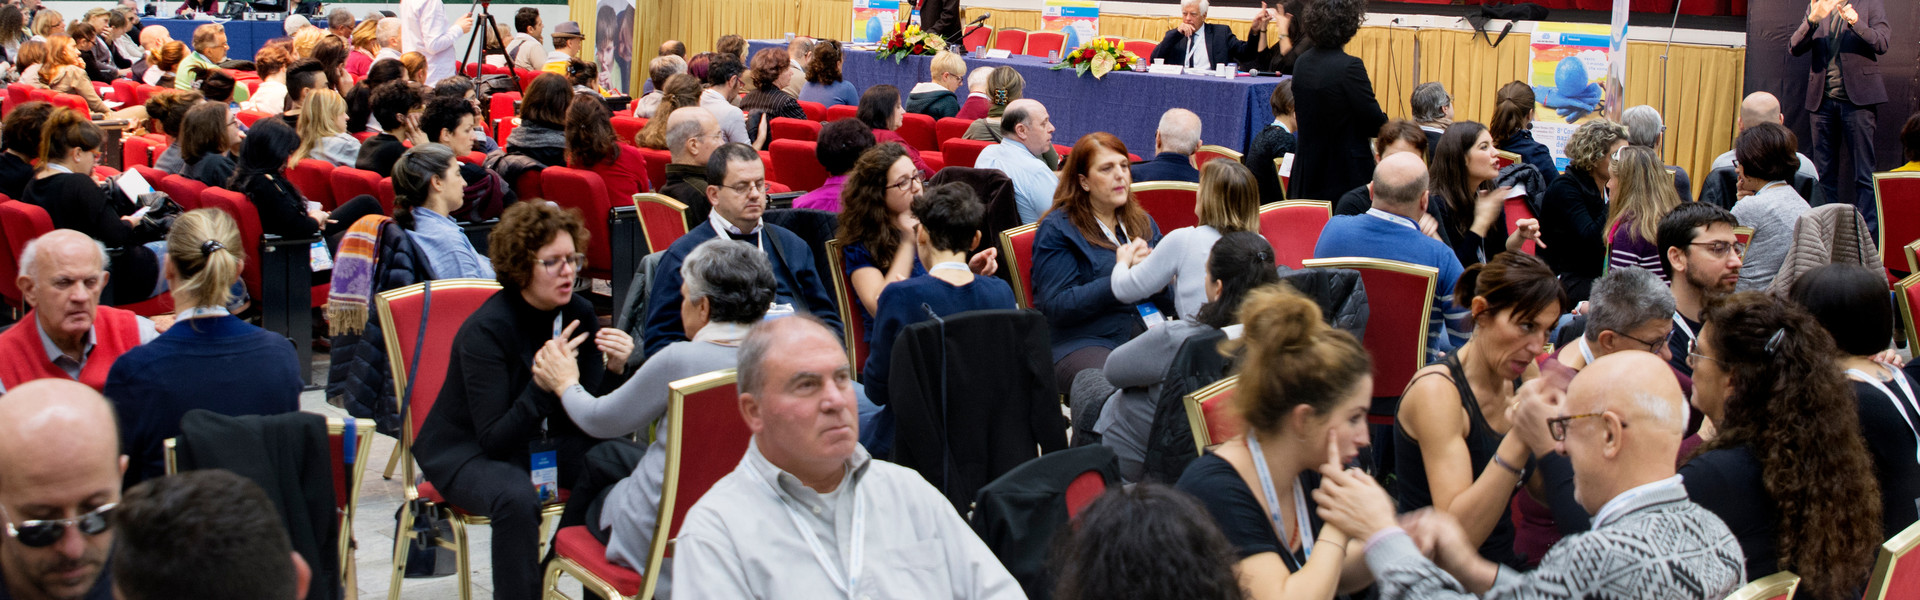 Conferenza nazionale delle persone sordocieche anno 2018. vista della platea. tante persone sordocieche e interpreti comunicano tra loro in LIS tattile e Malossi